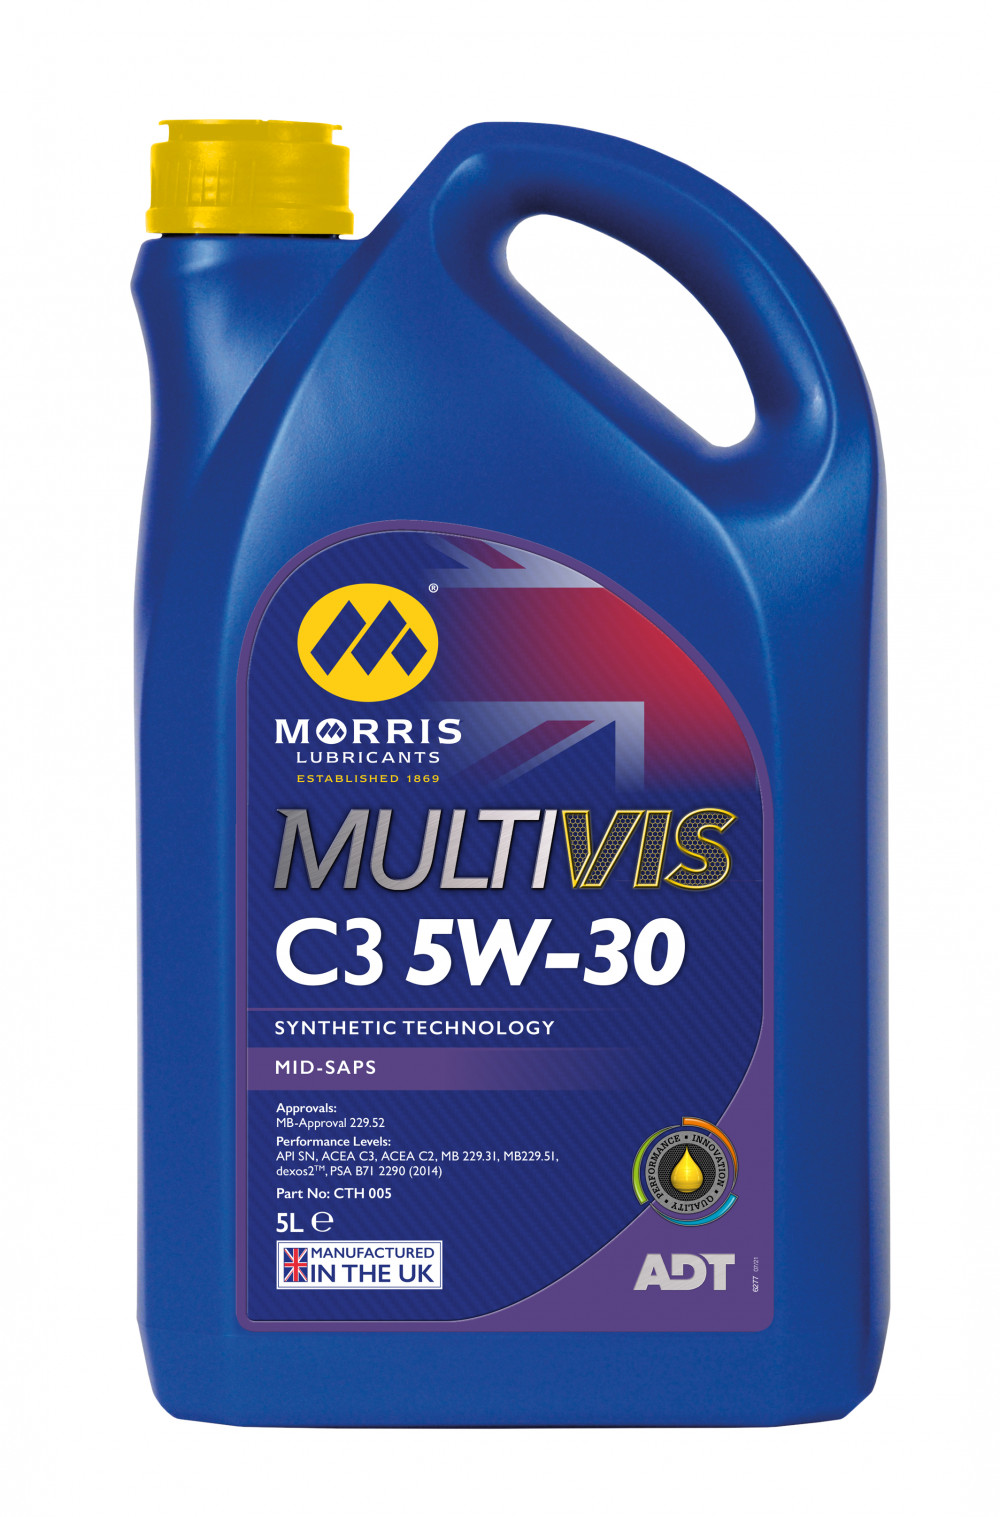 Multivis ADT C3 5W-30 